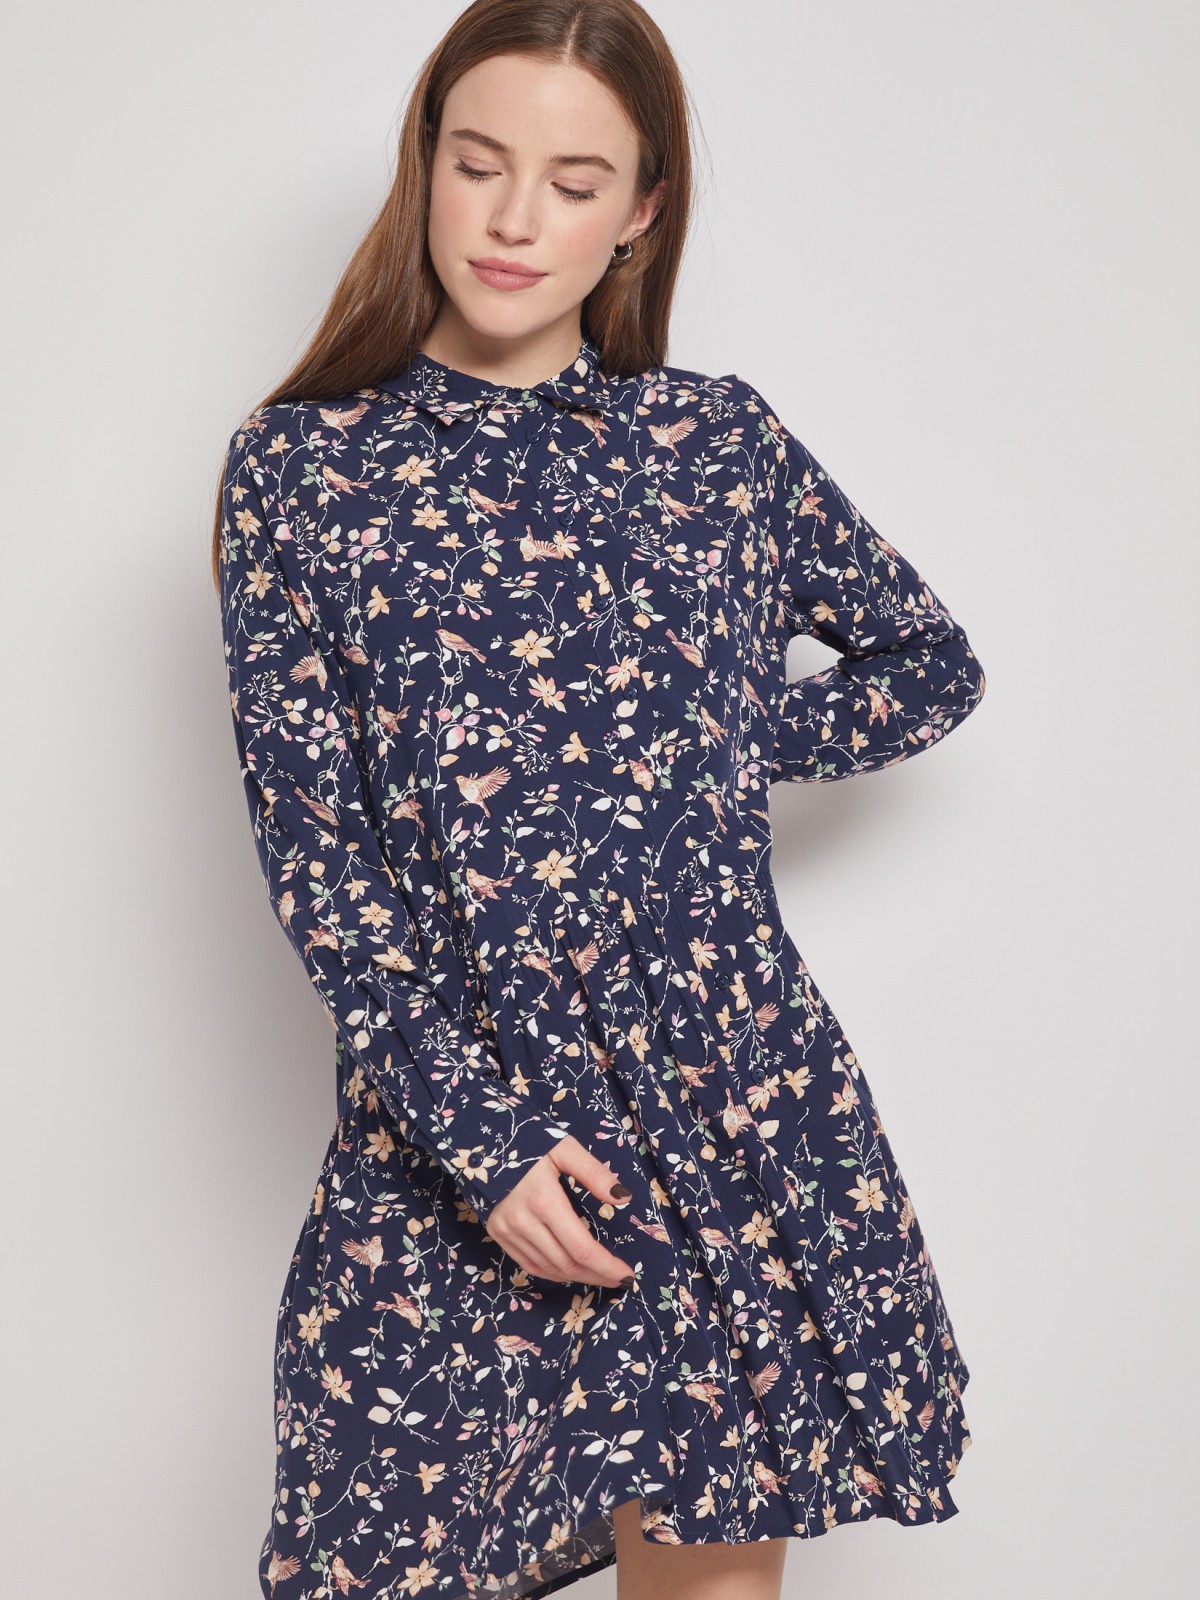 Платье-рубашка с длинным рукавом zolla 022118259102, цвет синий, размер S - фото 2